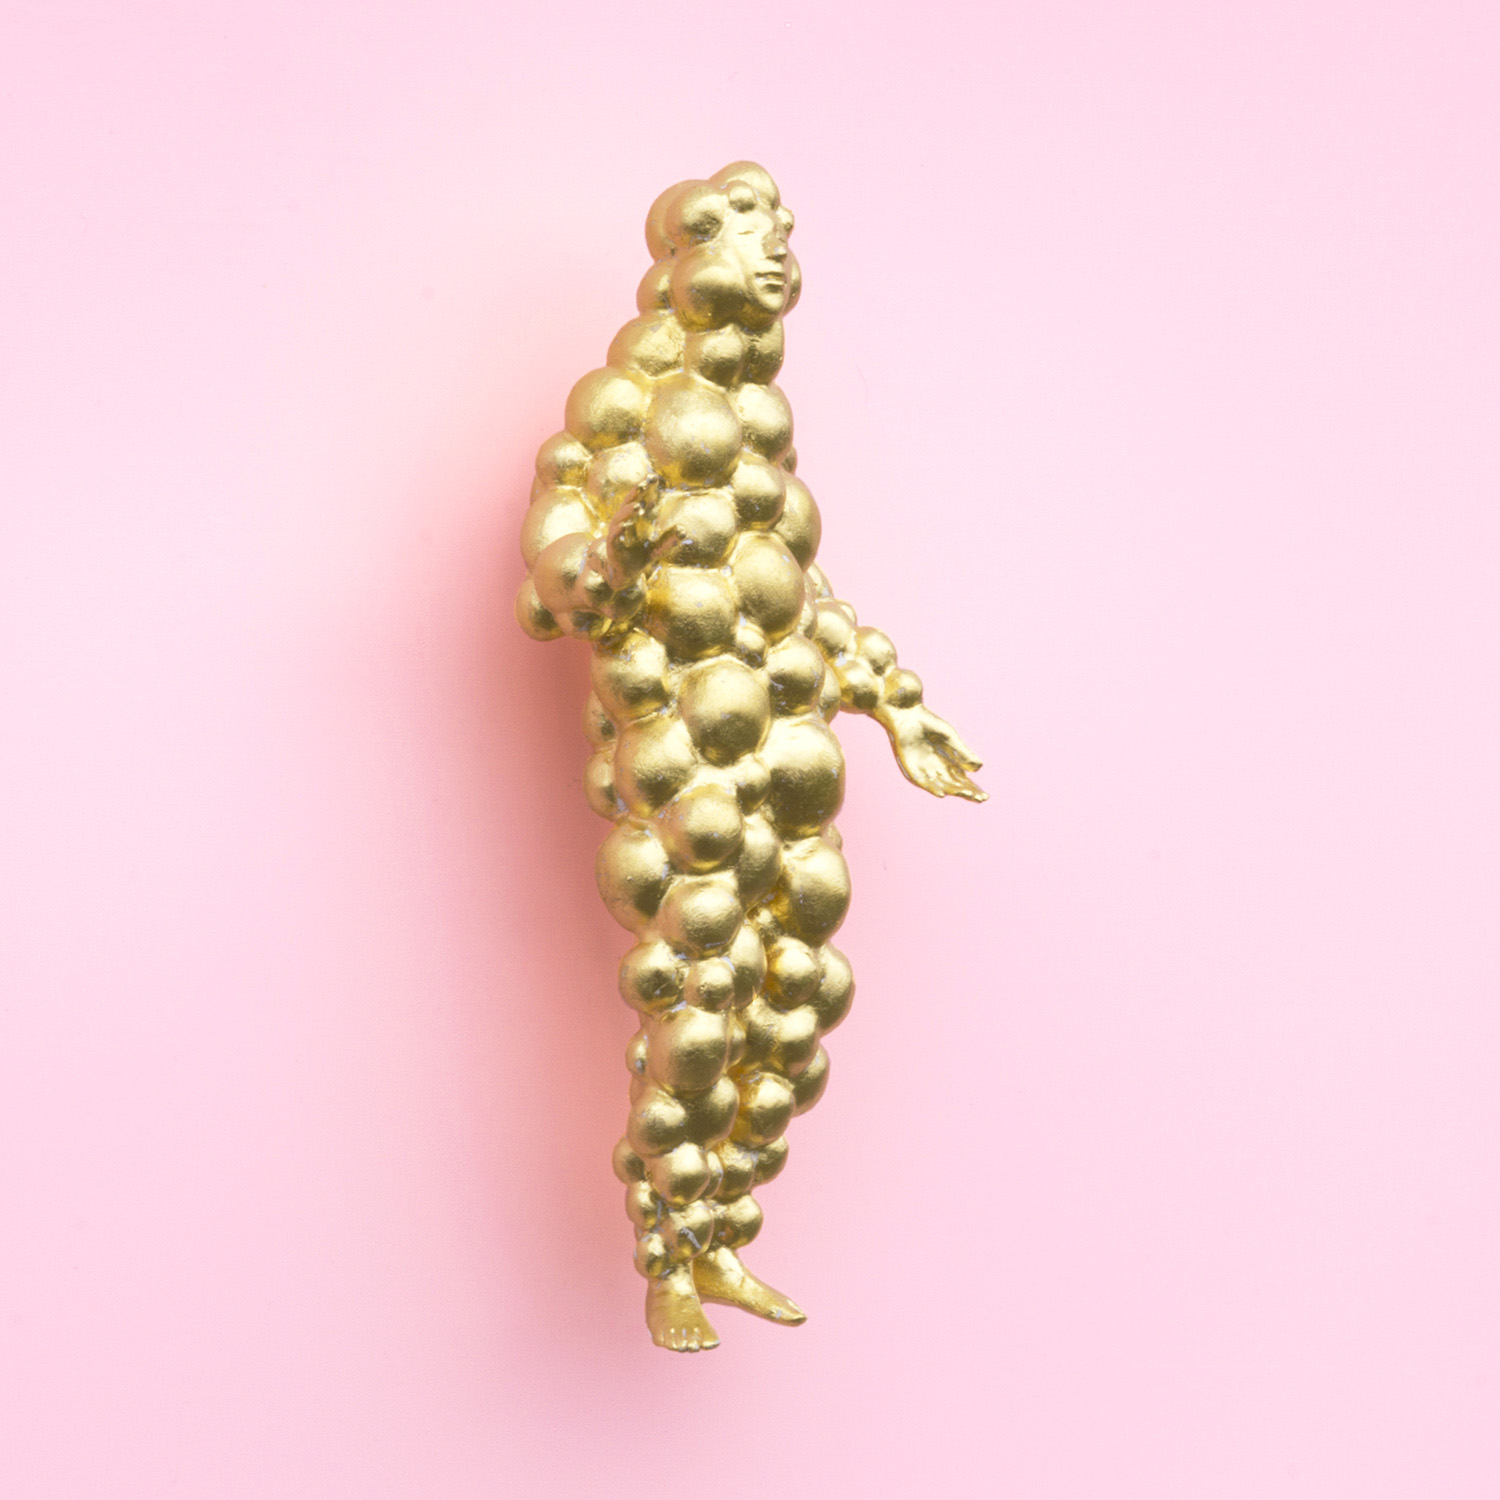 'En el oro confiamos', escultura número 94. Hecha en pan de oro. Altura: 16 cm. Precio: 850 euros. - imagen 1